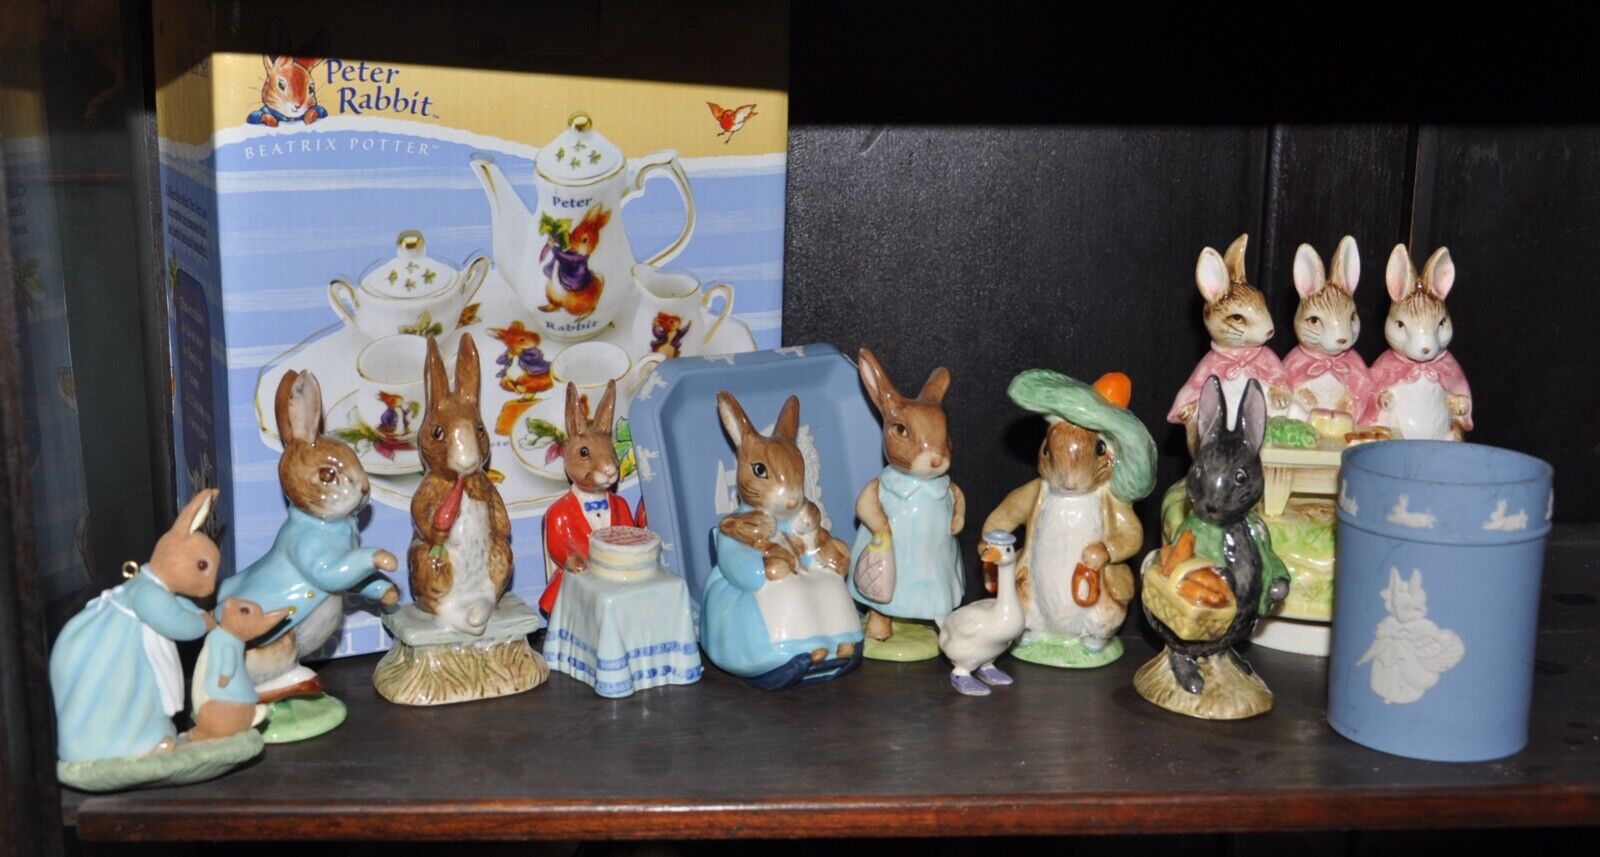 BunnyKins Peter Rabbit Figurines, Wedgwood Pieces, Tea Set, Beatrix Potter